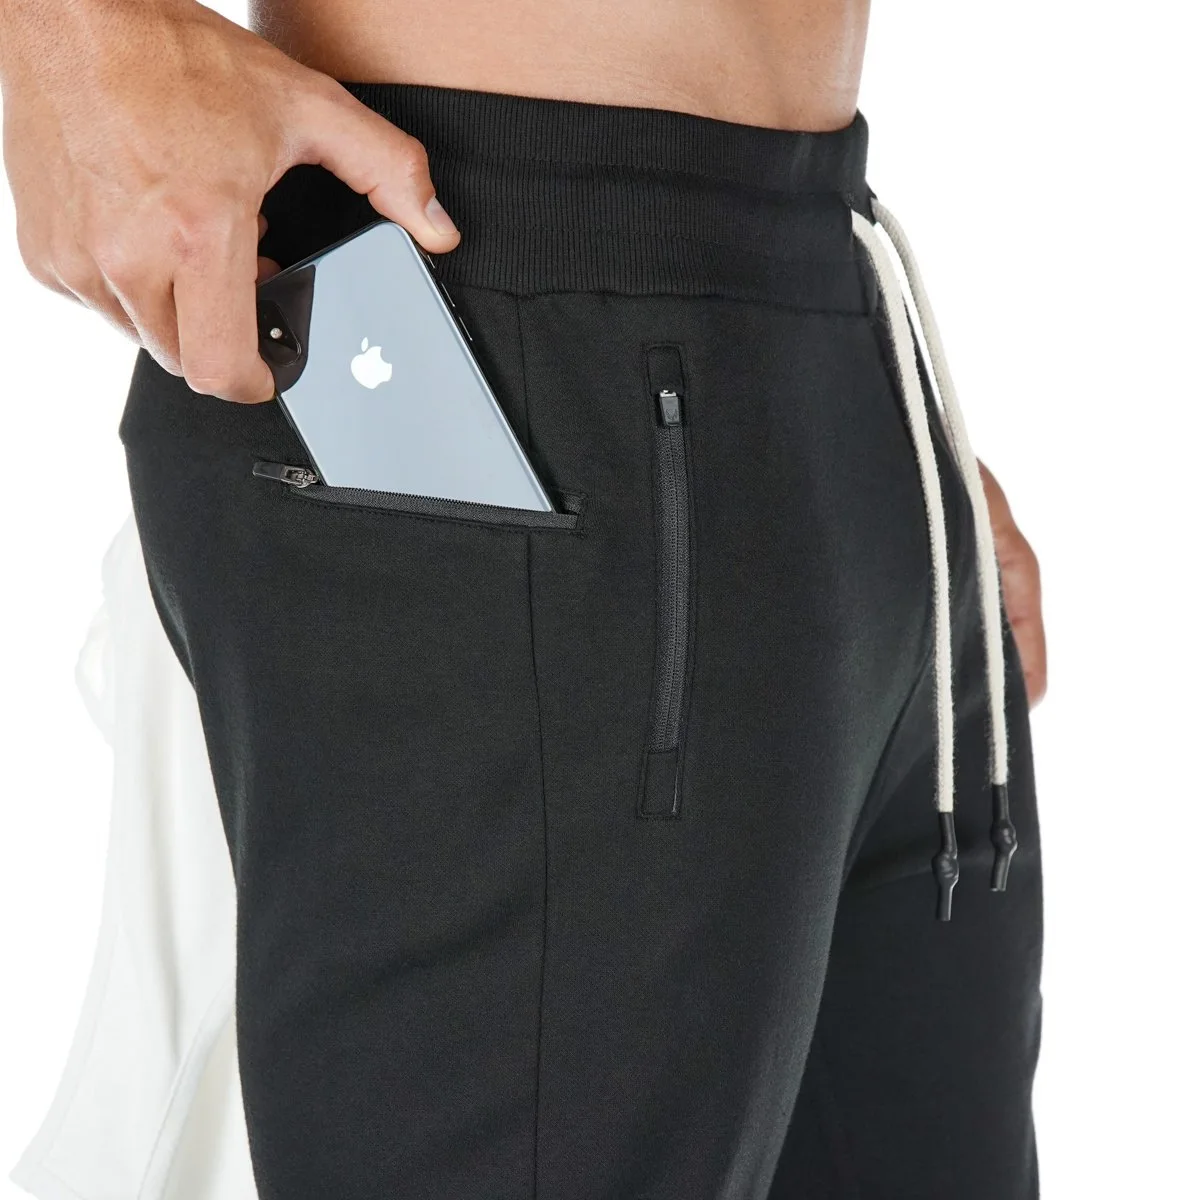 Новые хлопковые легинсы для бега Для мужчин спортивные тренировочные брюки Джоггеры для Для мужчин бег Фитнес спортивные брюки спортивная одежда